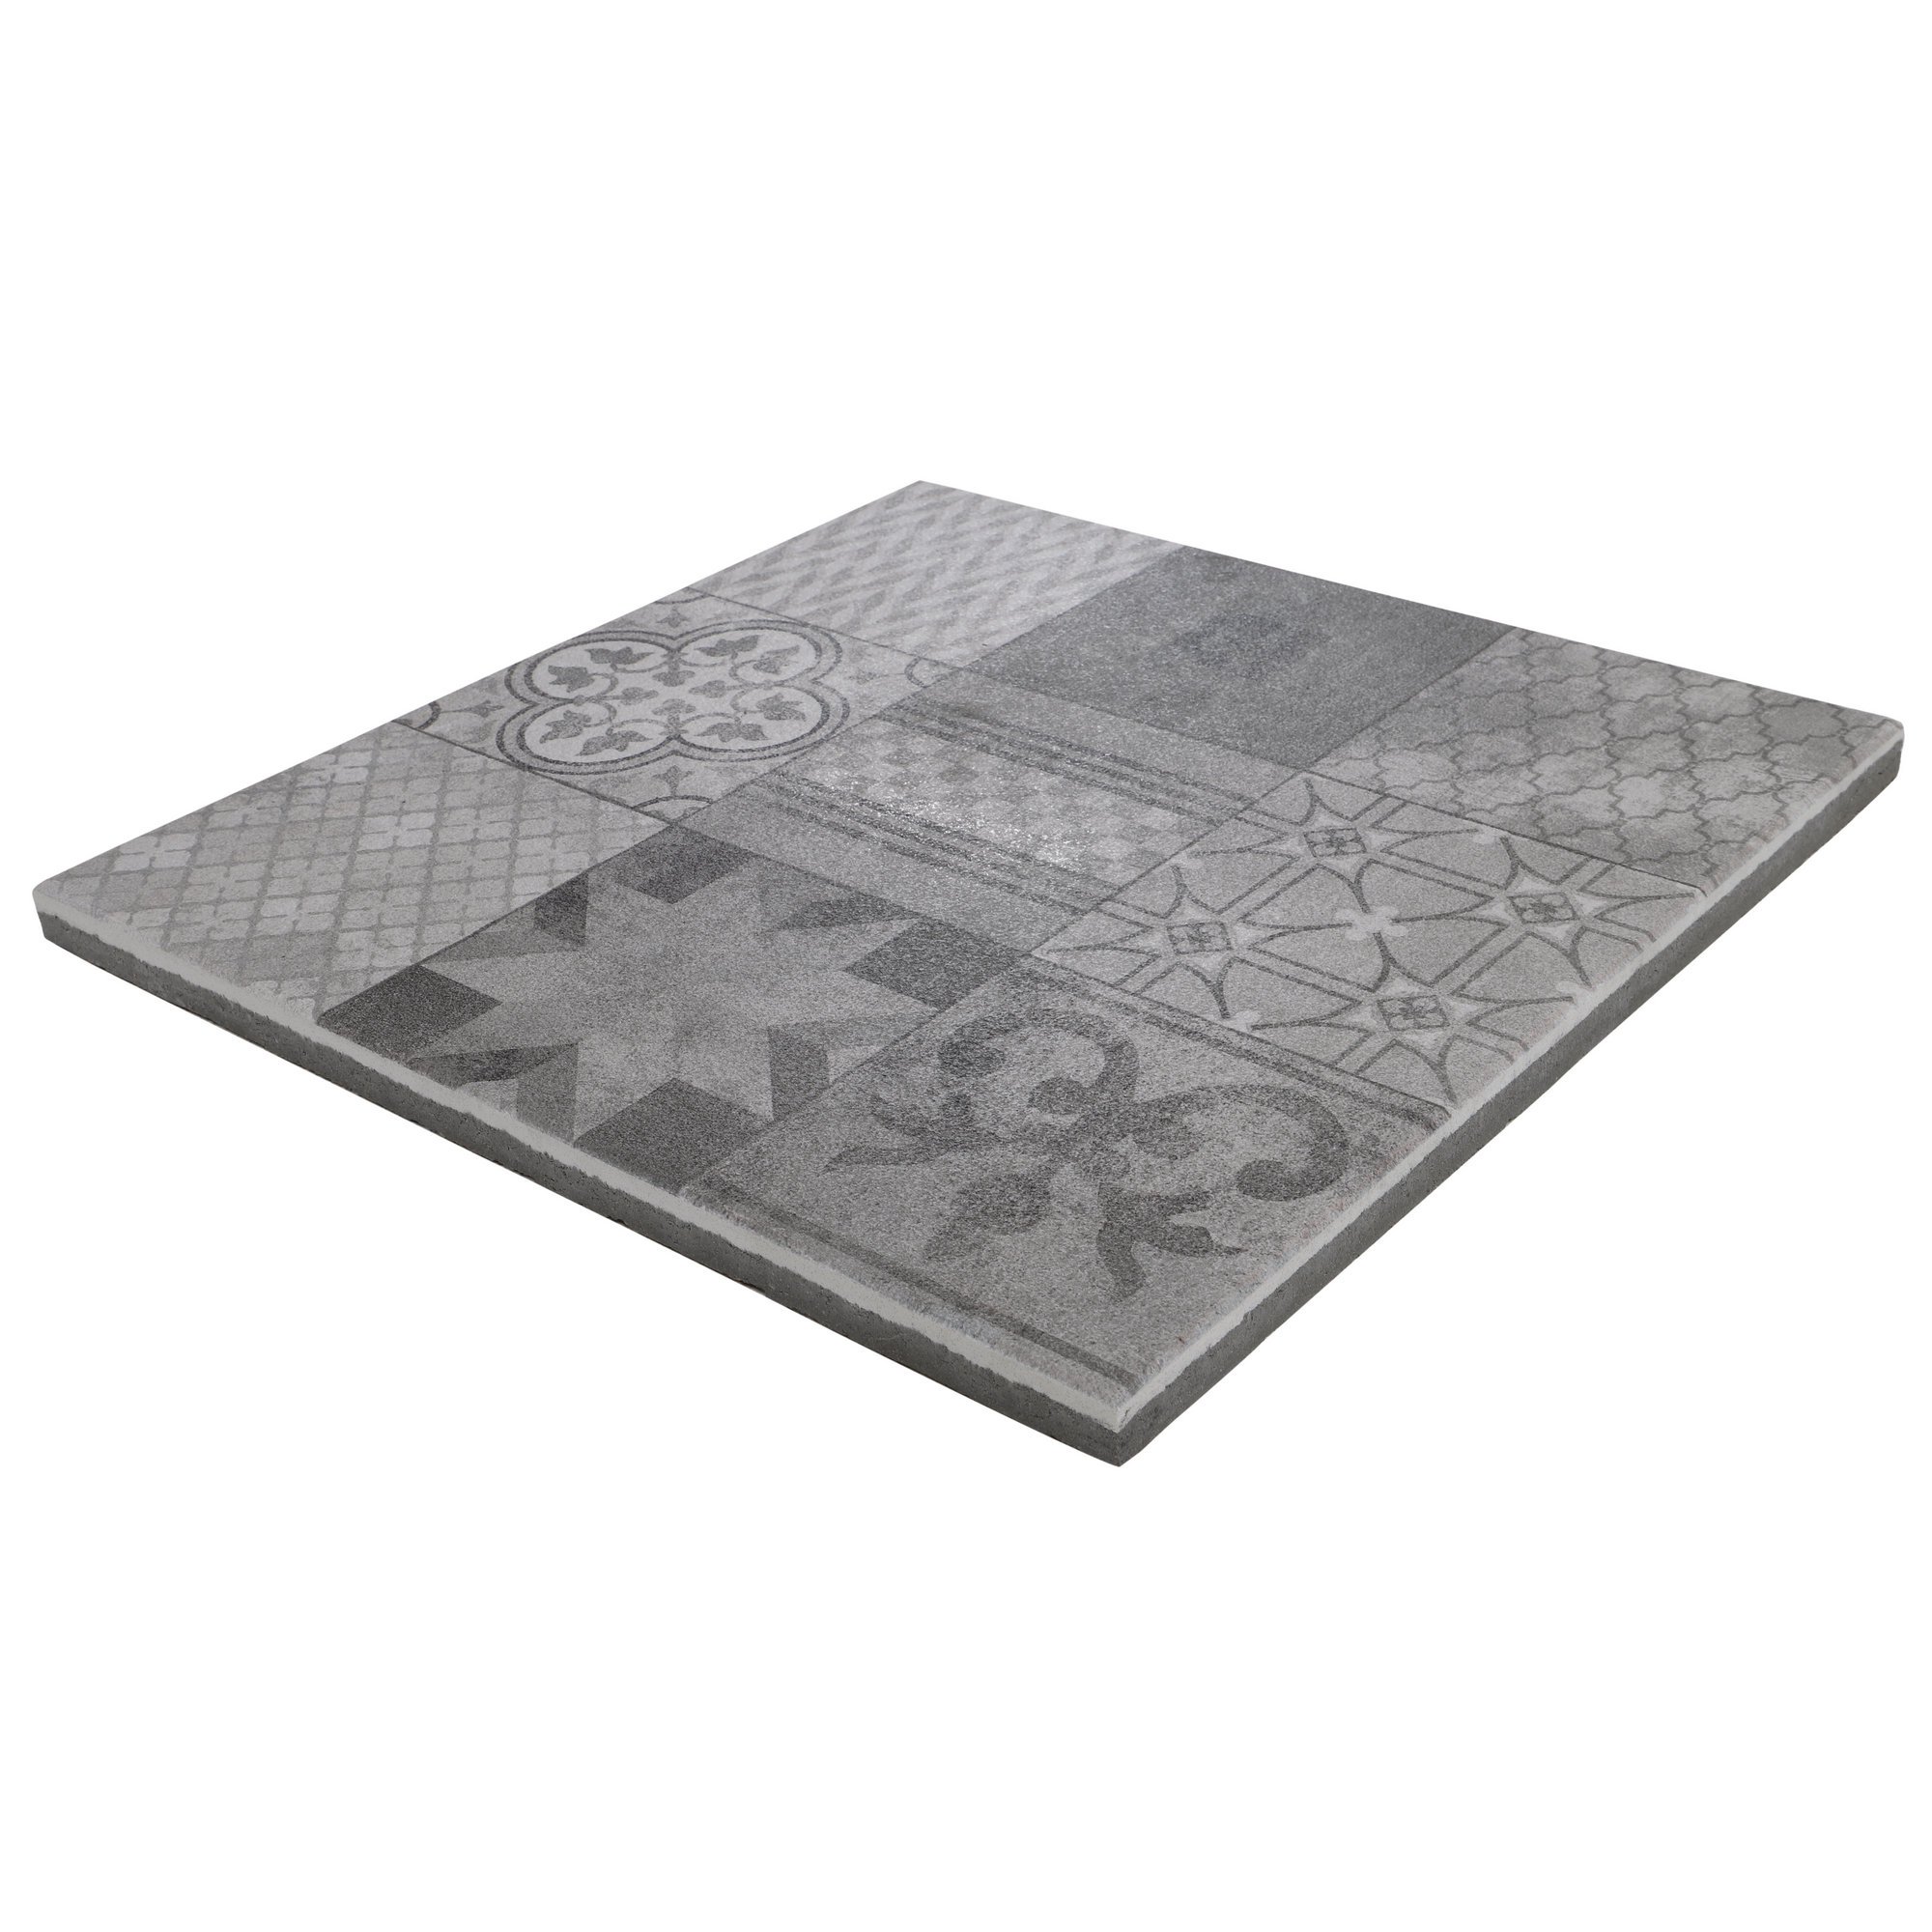 Platte 'Mosaik Orient novo' grau 60 x 60 x 3,2 cm + product picture